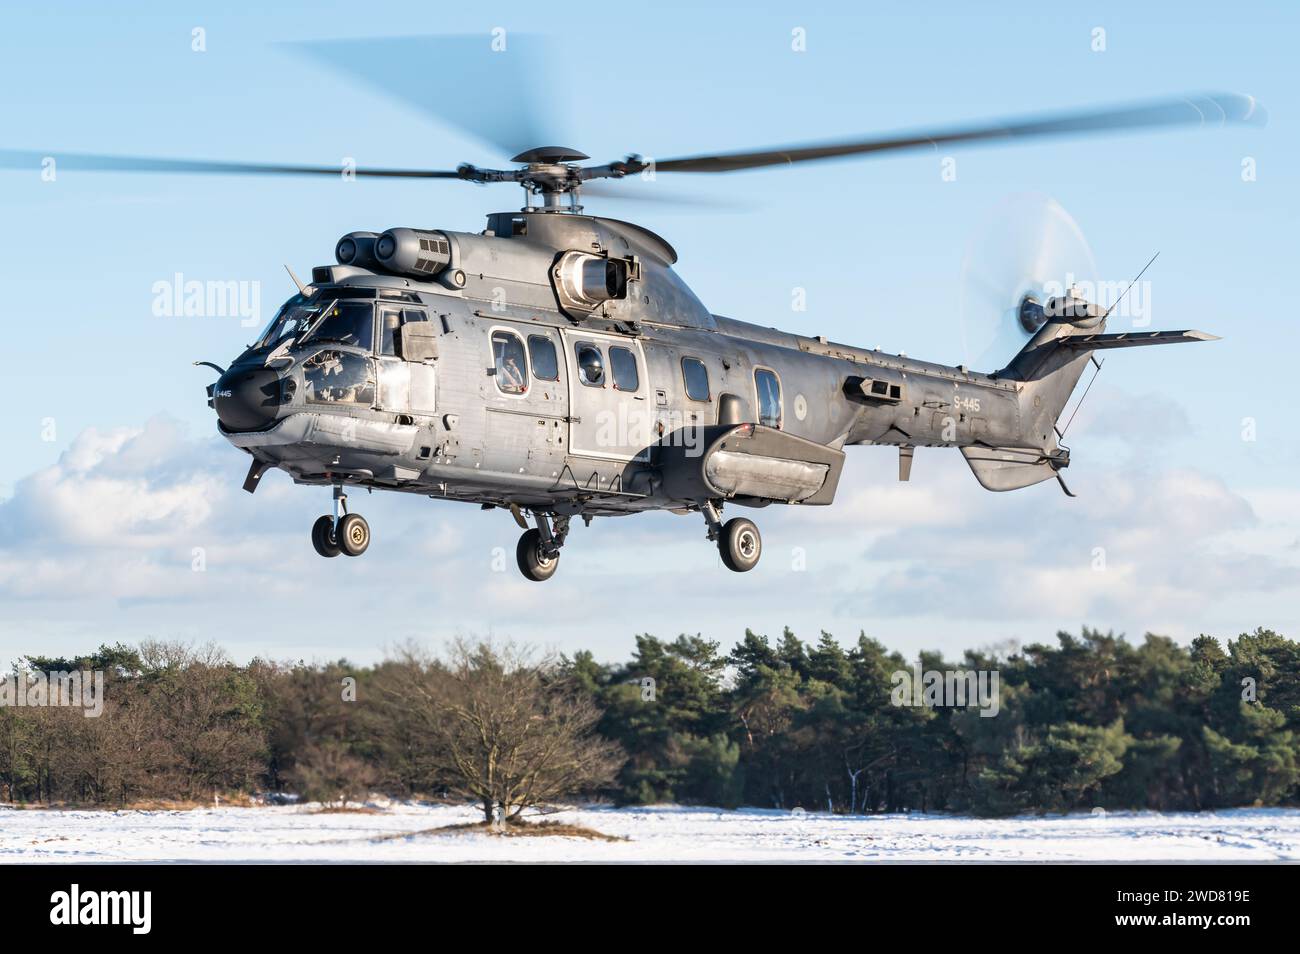 Un hélicoptère militaire Eurocopter AS532 Cougar du 300e escadron de la Rpyal Netherlands Air Force. Banque D'Images